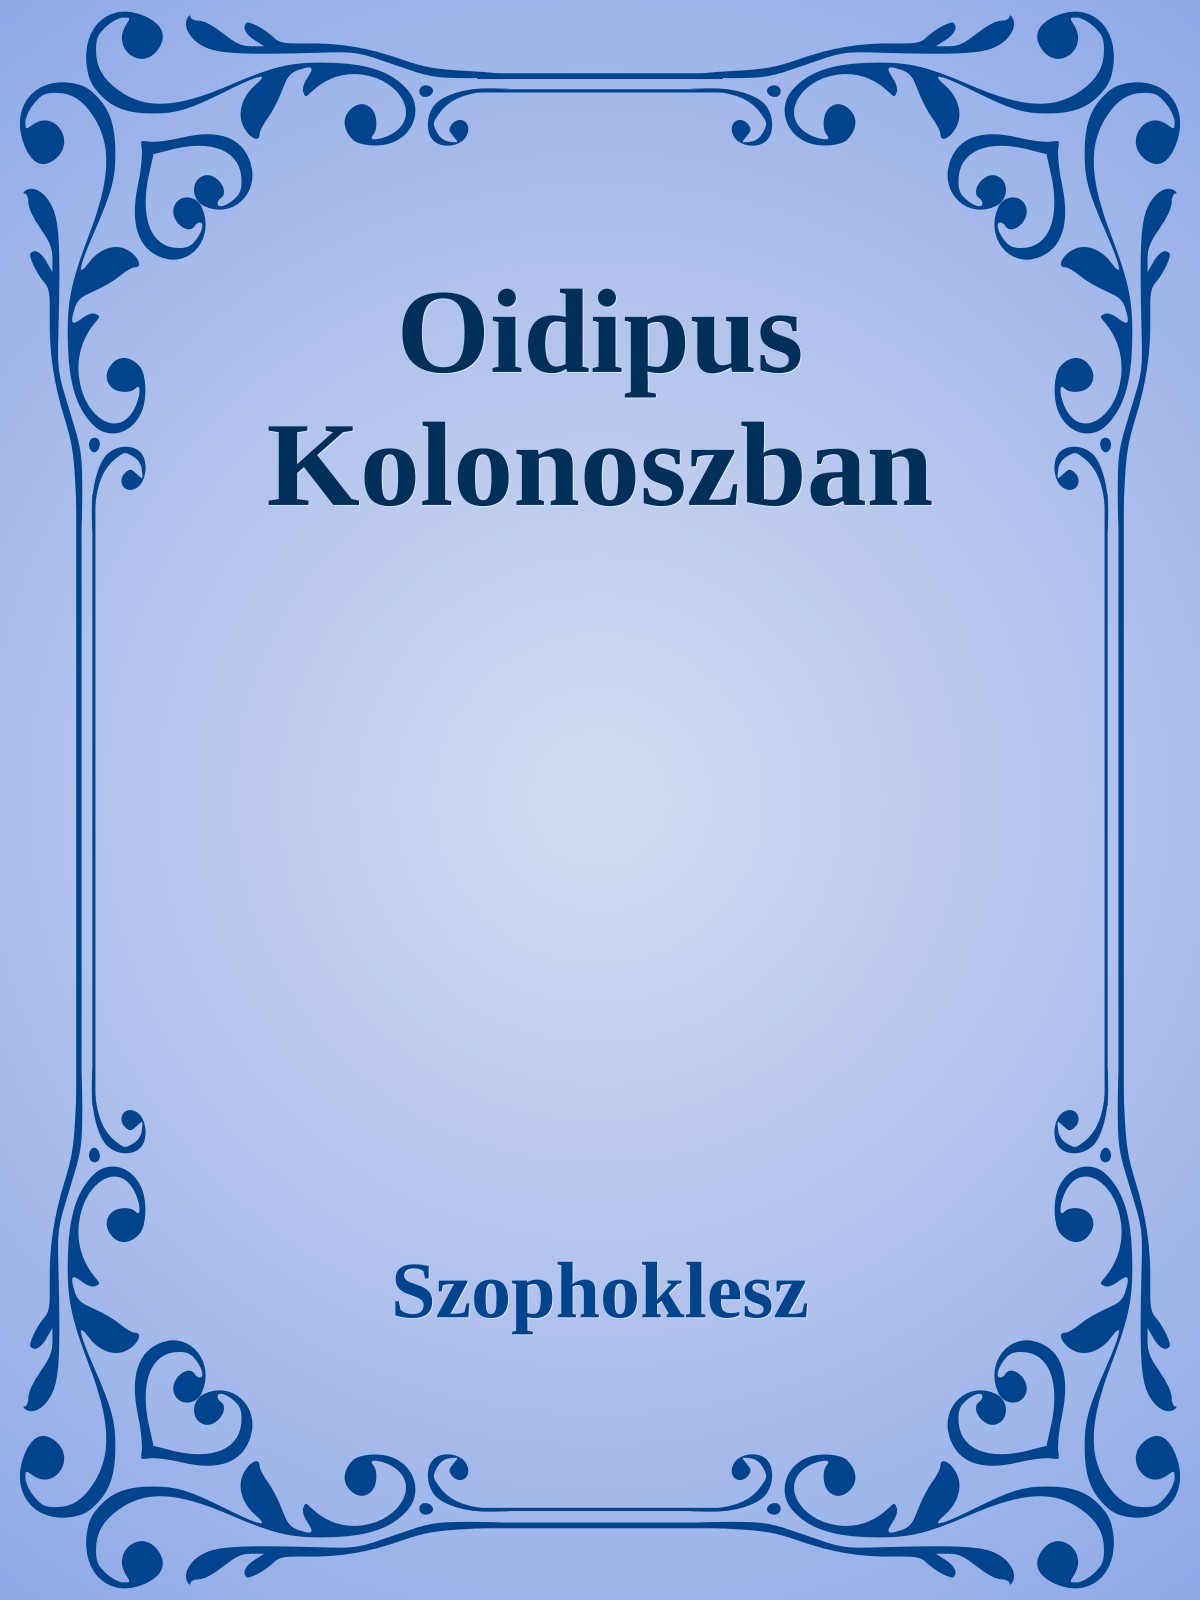 Oidipus Kolonoszban